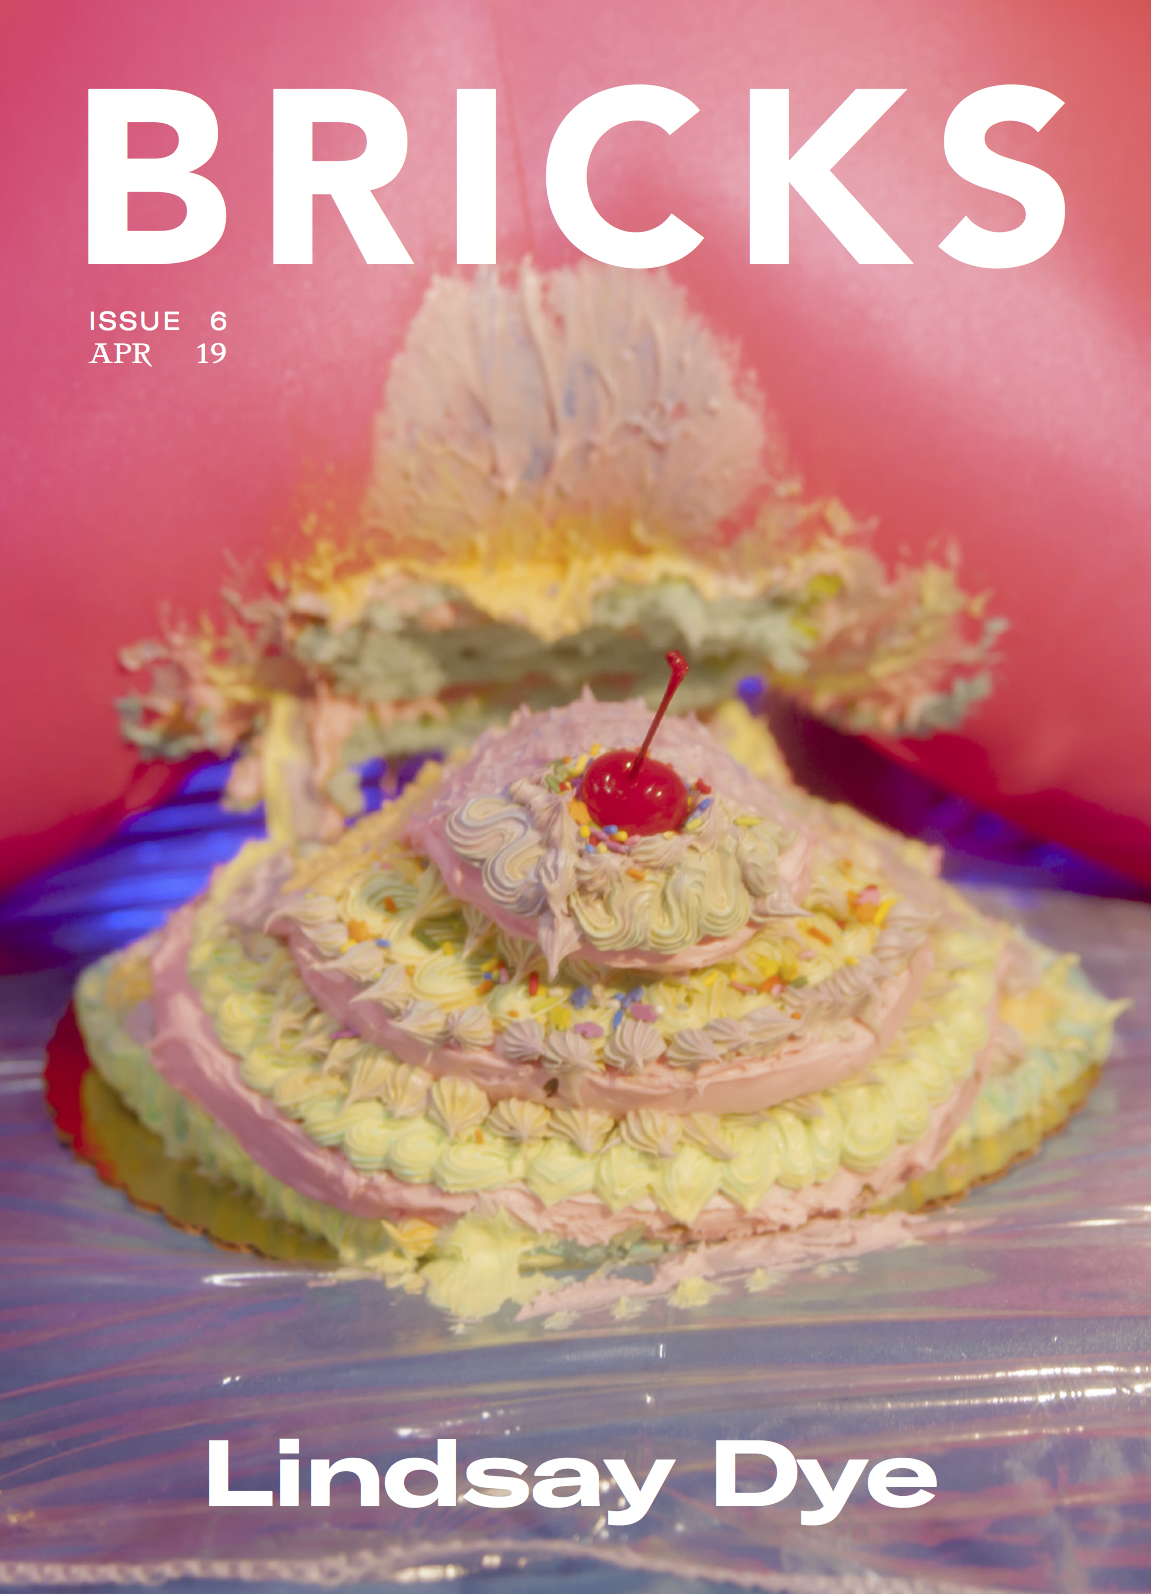  Lindsay Dye for Bricks Magazine Cover Story, 2019.   